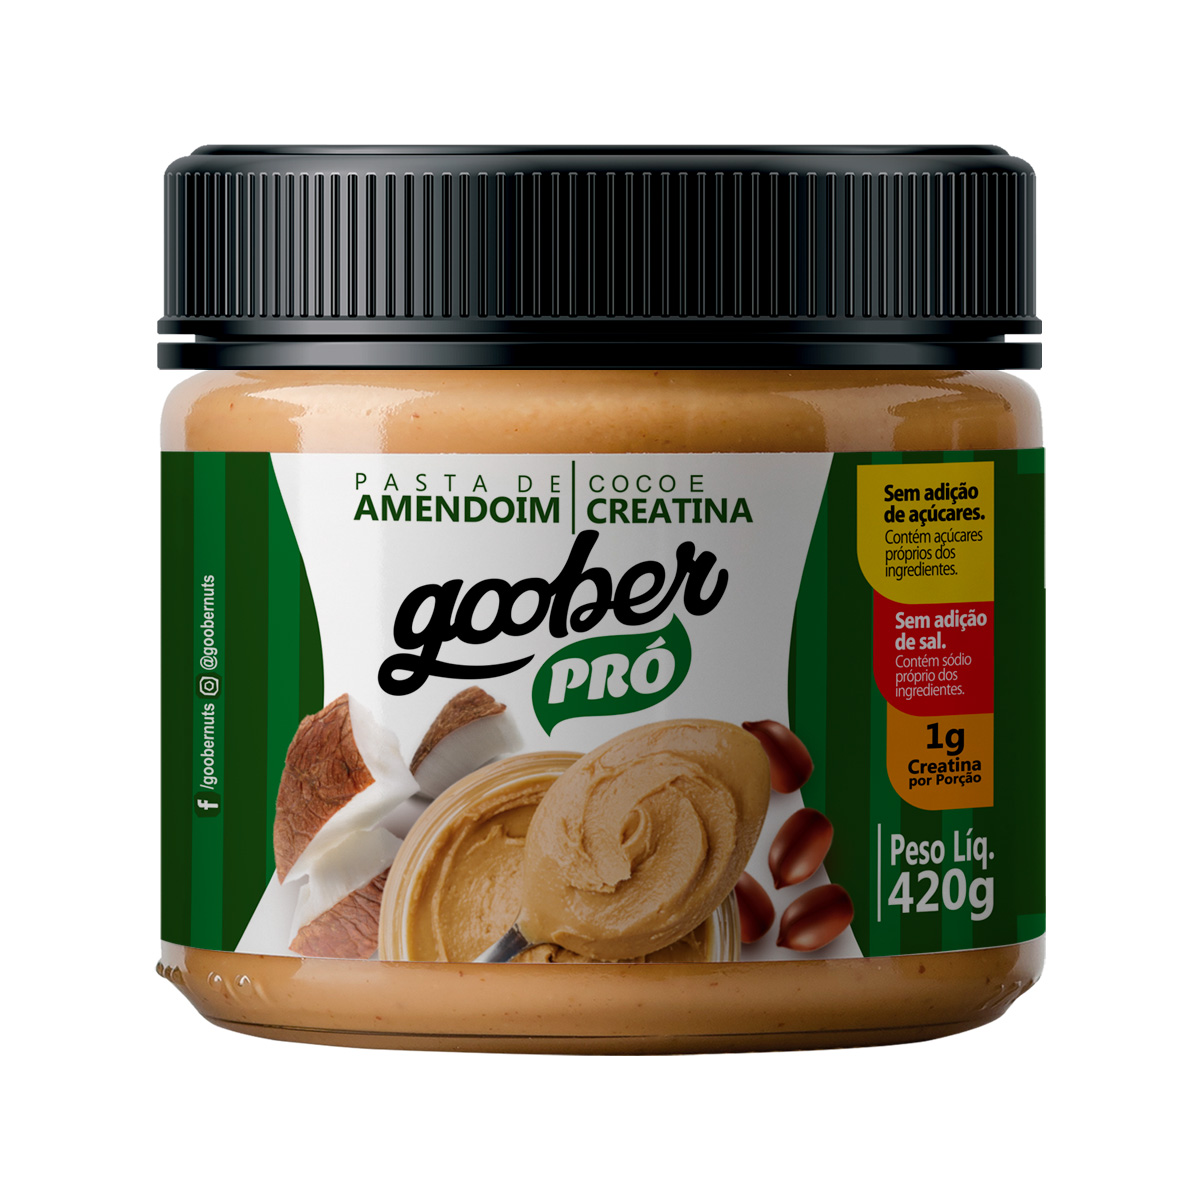 Pasta de Amendoim com Coco e Creatina - Pote 420 g